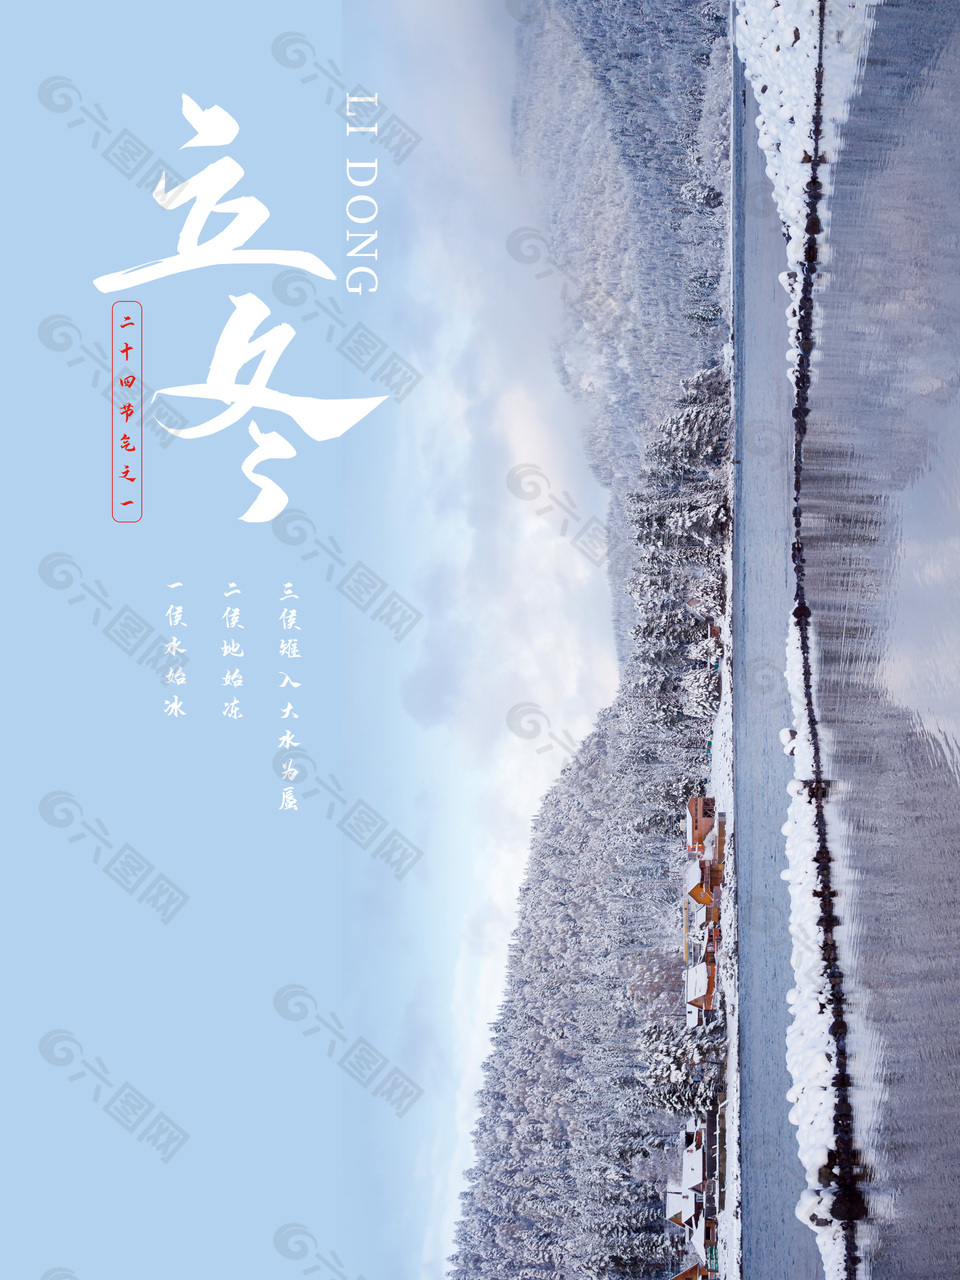 立冬二十四节气之一冬日湖景素材海报